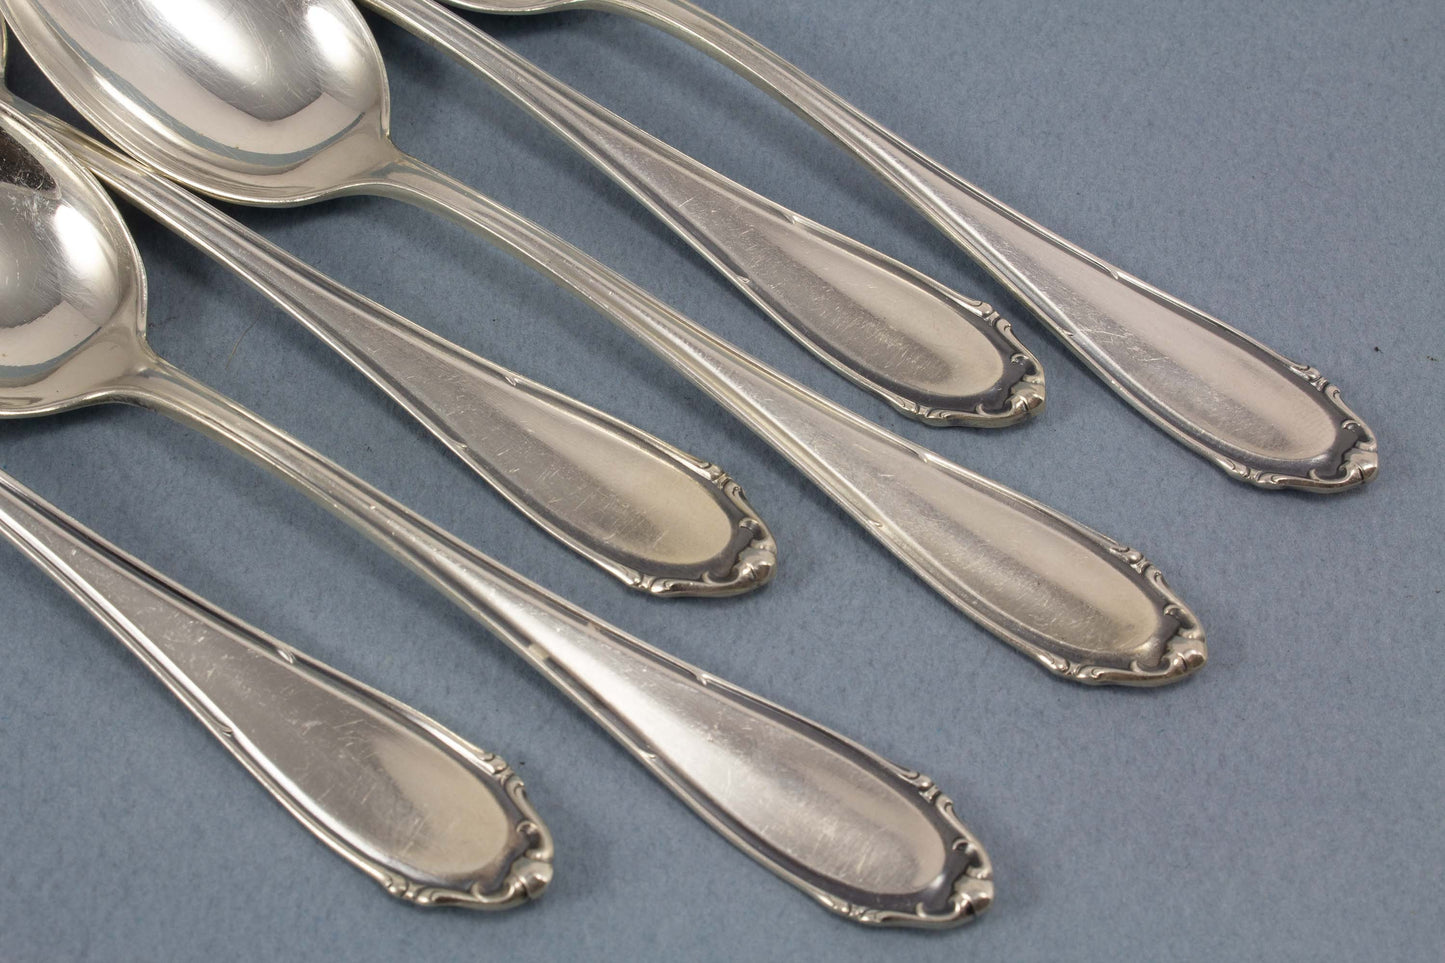 Silberne Kuchengabeln und Teelöffel von BSF, 800er Silber, Fackel, Halbmond + Krone, Besteck Set für 6 Personen